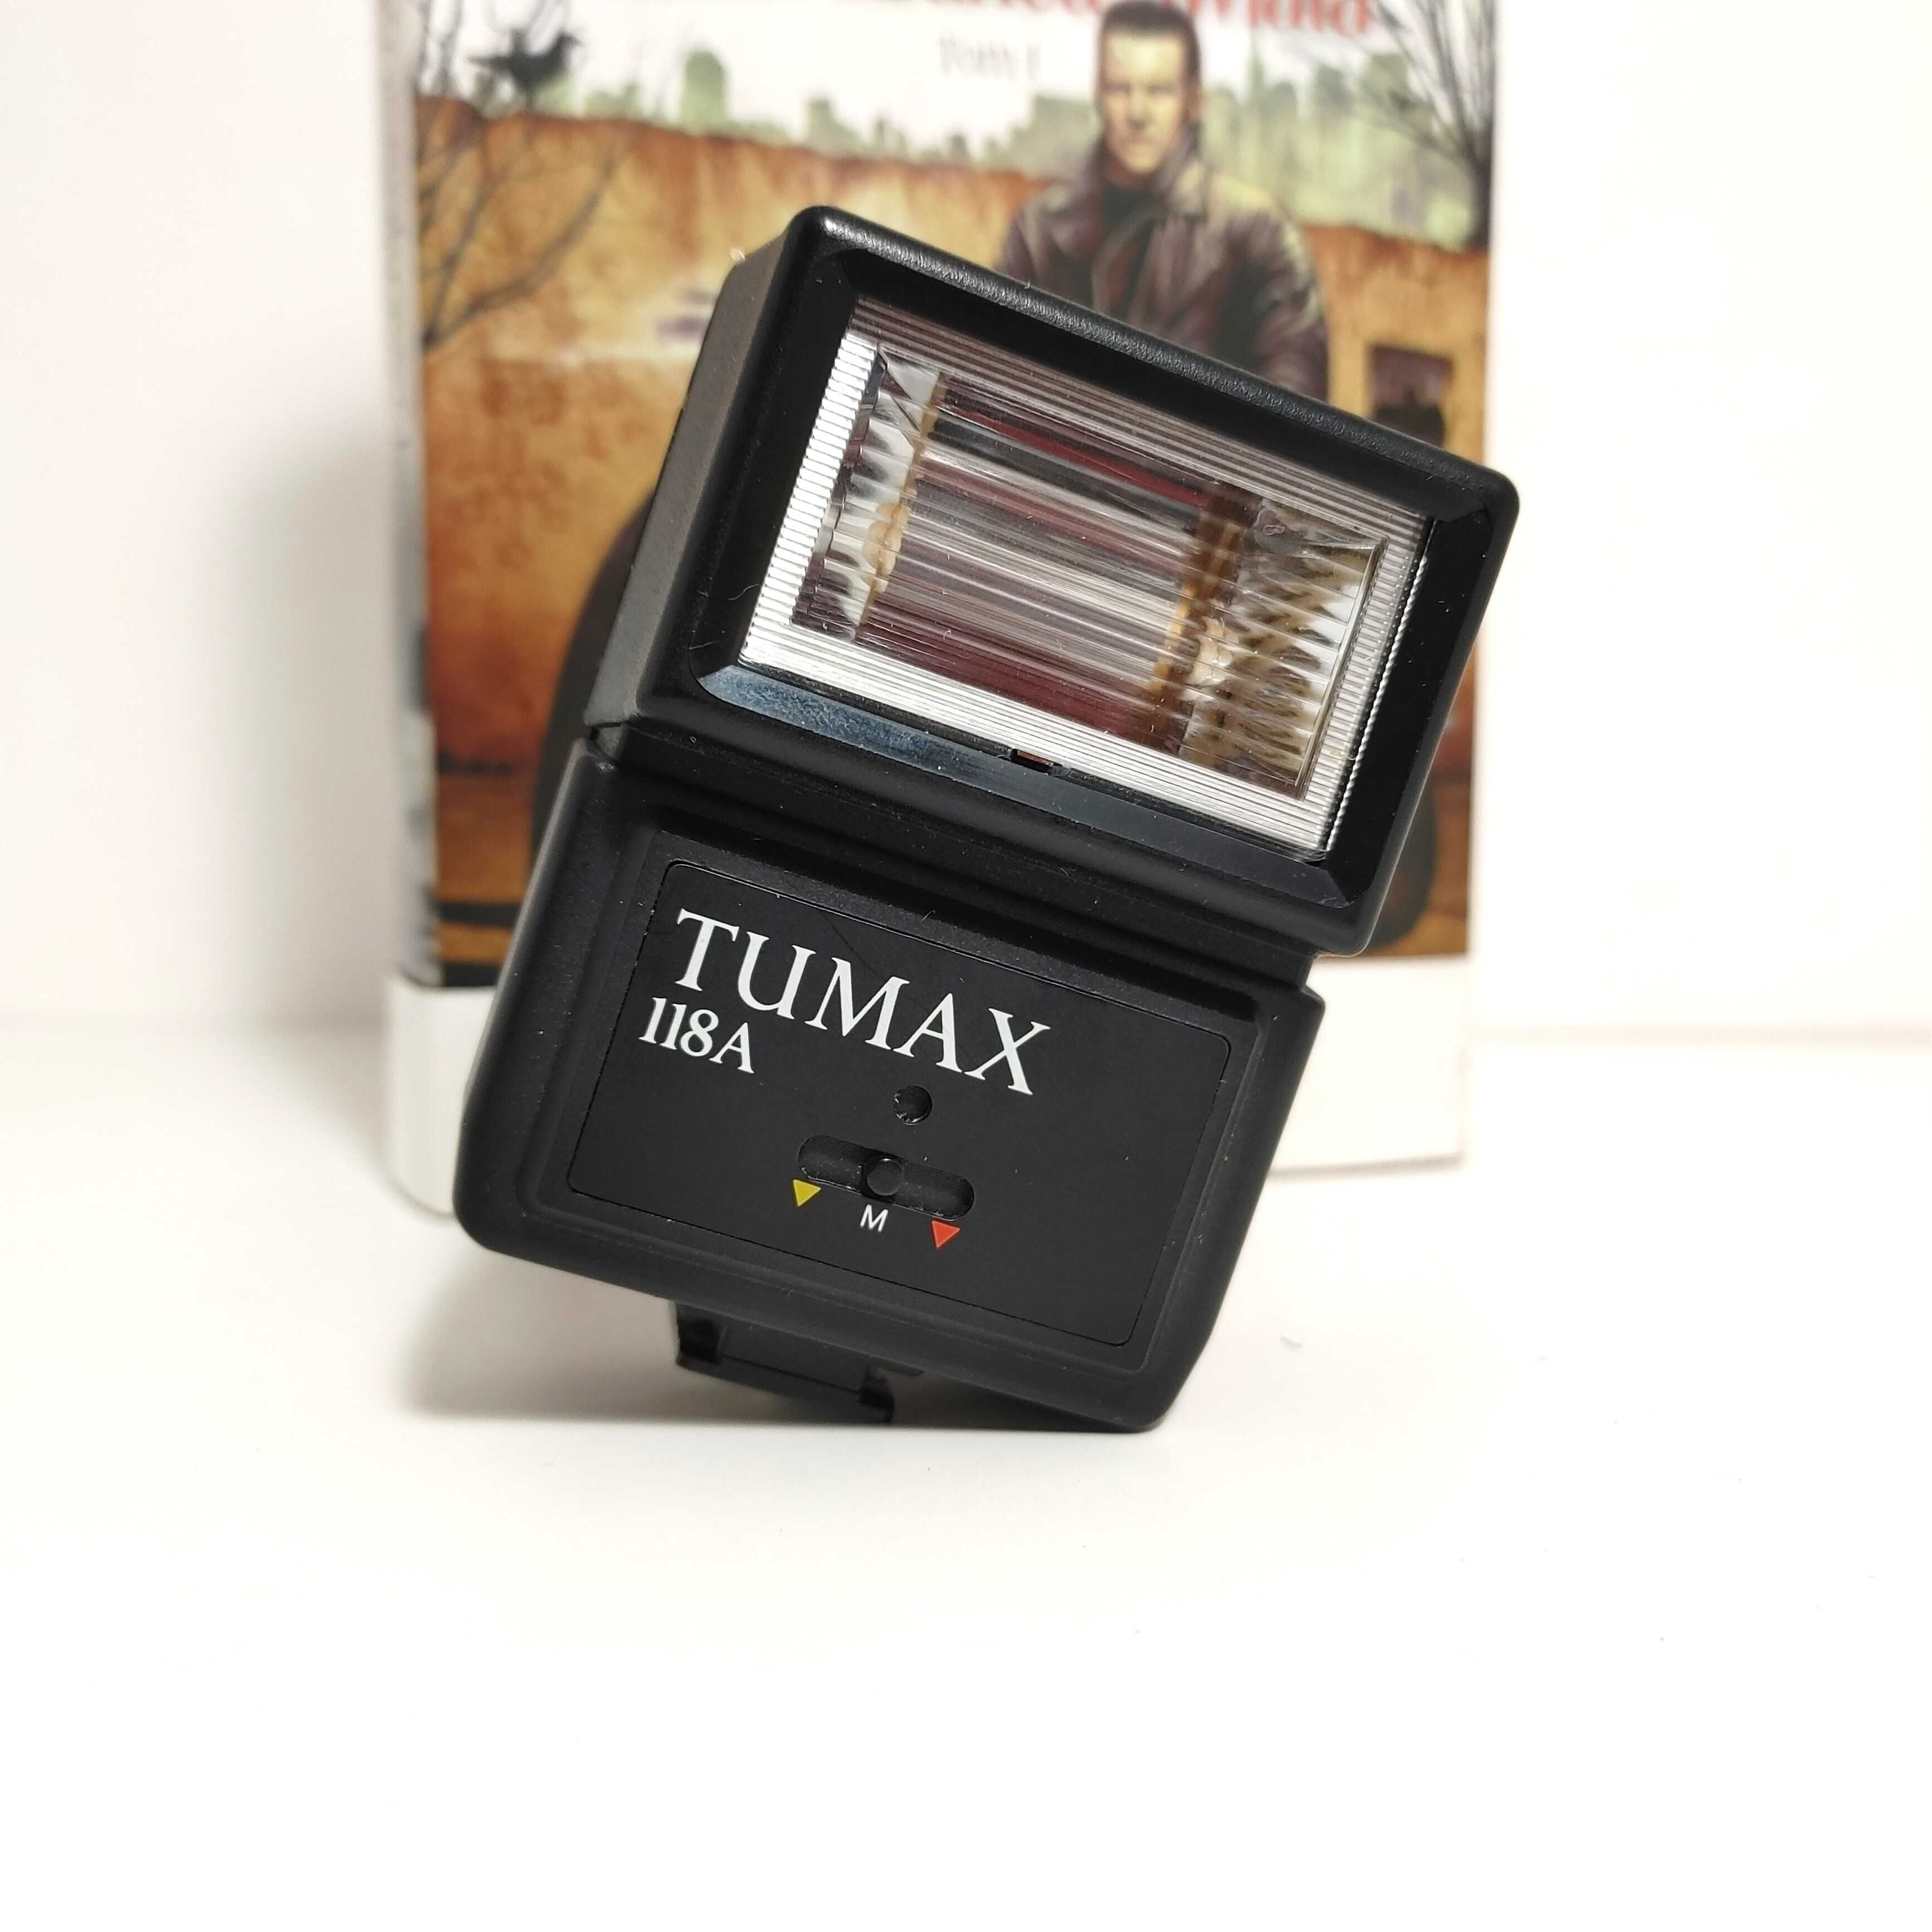 Lampa Błyskowa z gorącą stopką do starszych aparatów - TUMAX Auto 118A